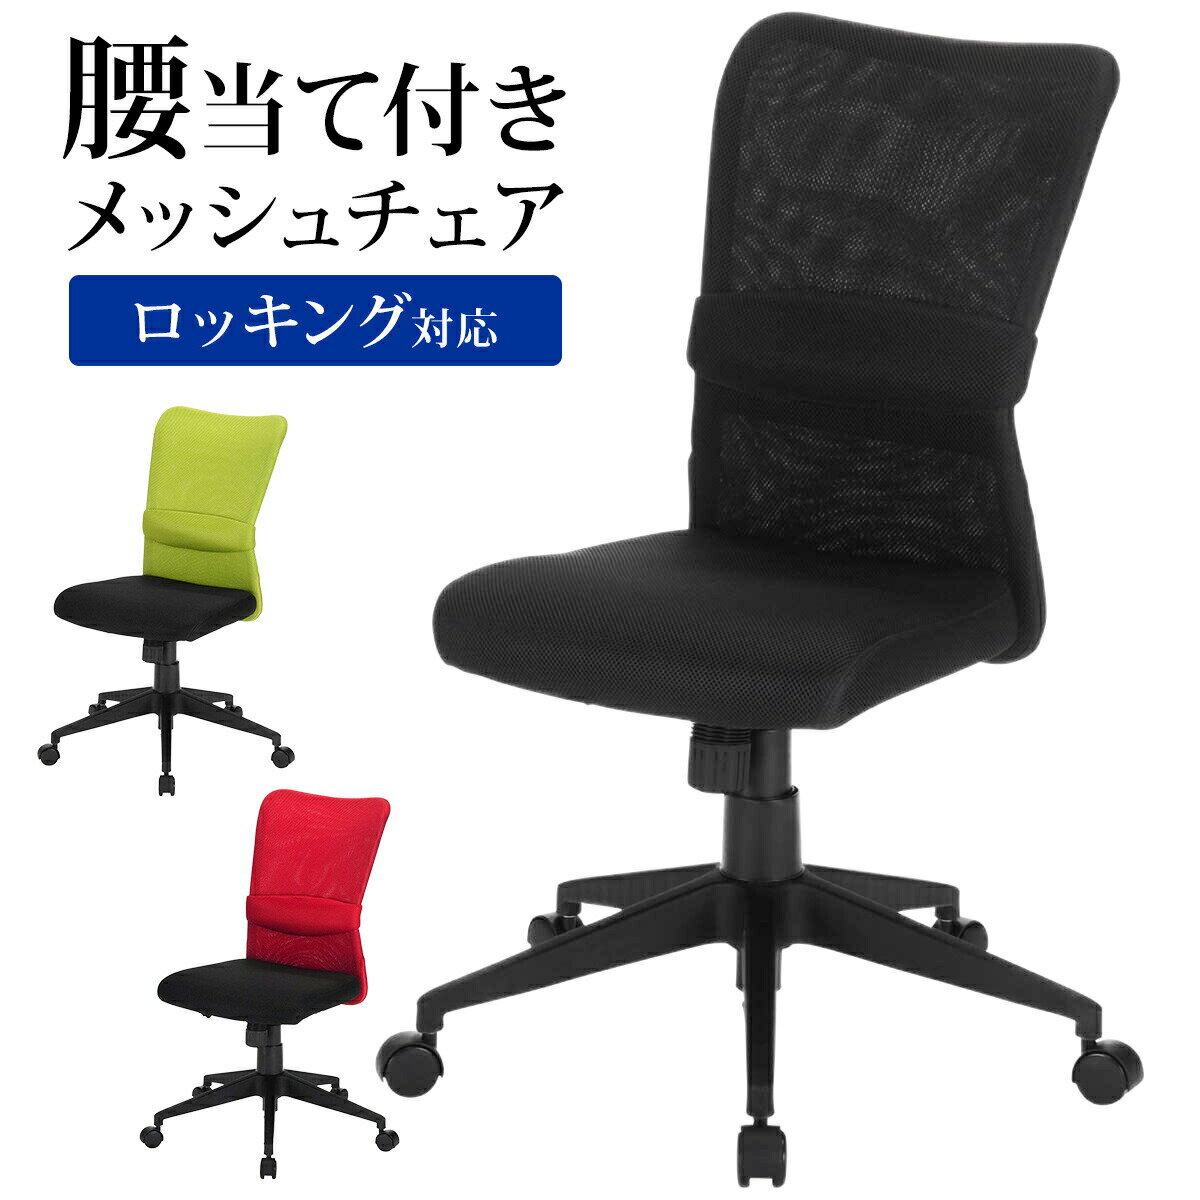 メッシュチェア ネットチェア パソコンチェア ロッキング ブラック・レッド・グリーン オフィスチェア デスクチェア 椅子 コンパクト キャスター 腰痛対策